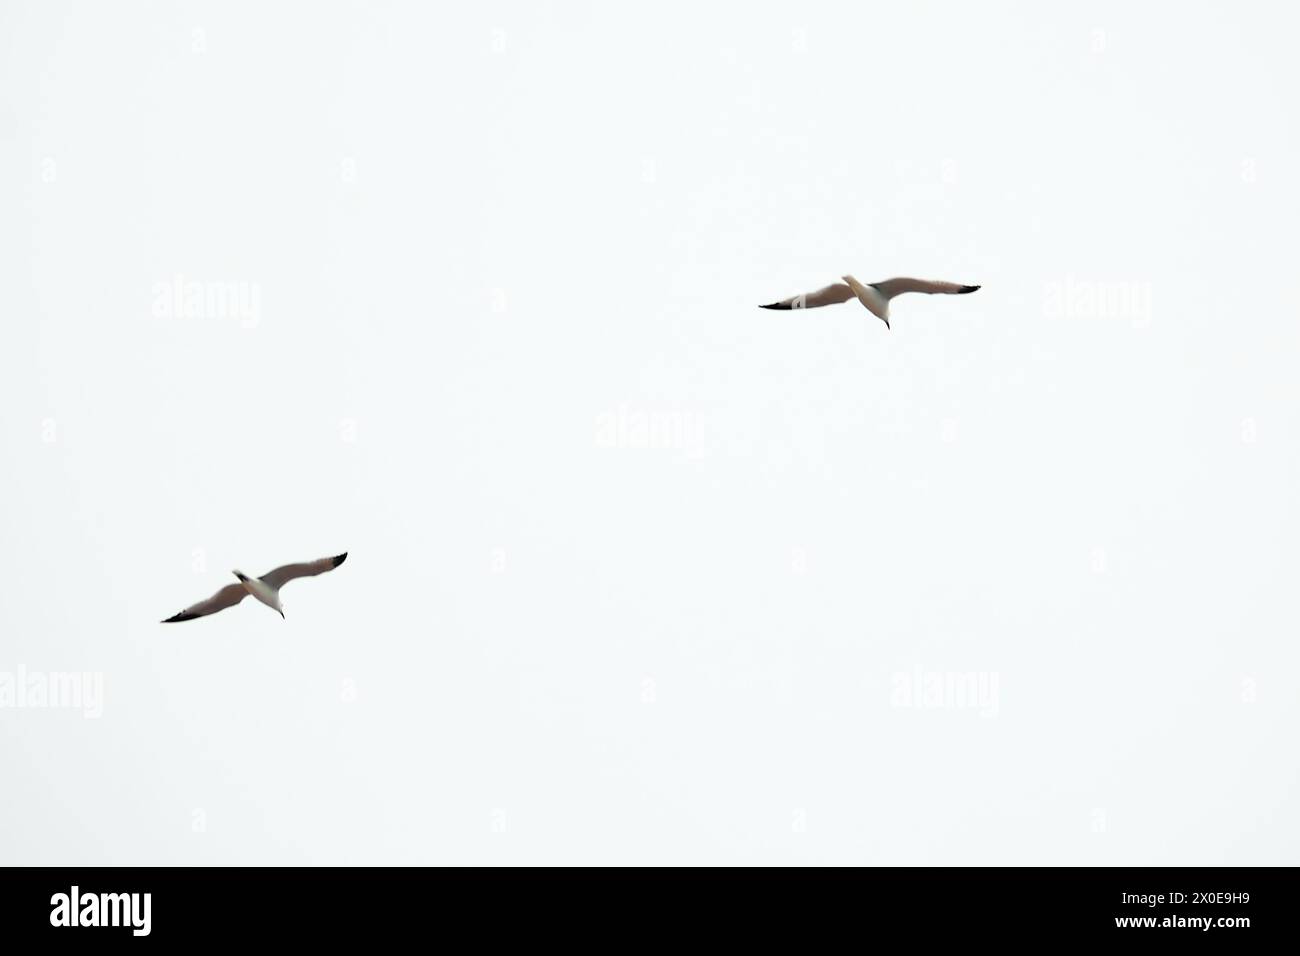 Eine elegante Aufnahme von zwei Vögeln in der Mitte des Fluges, die die Anmut und Synchronität ihrer Bewegungen vor einem klaren und ungehinderten Himmel hervorheben, ideal für Stockfoto